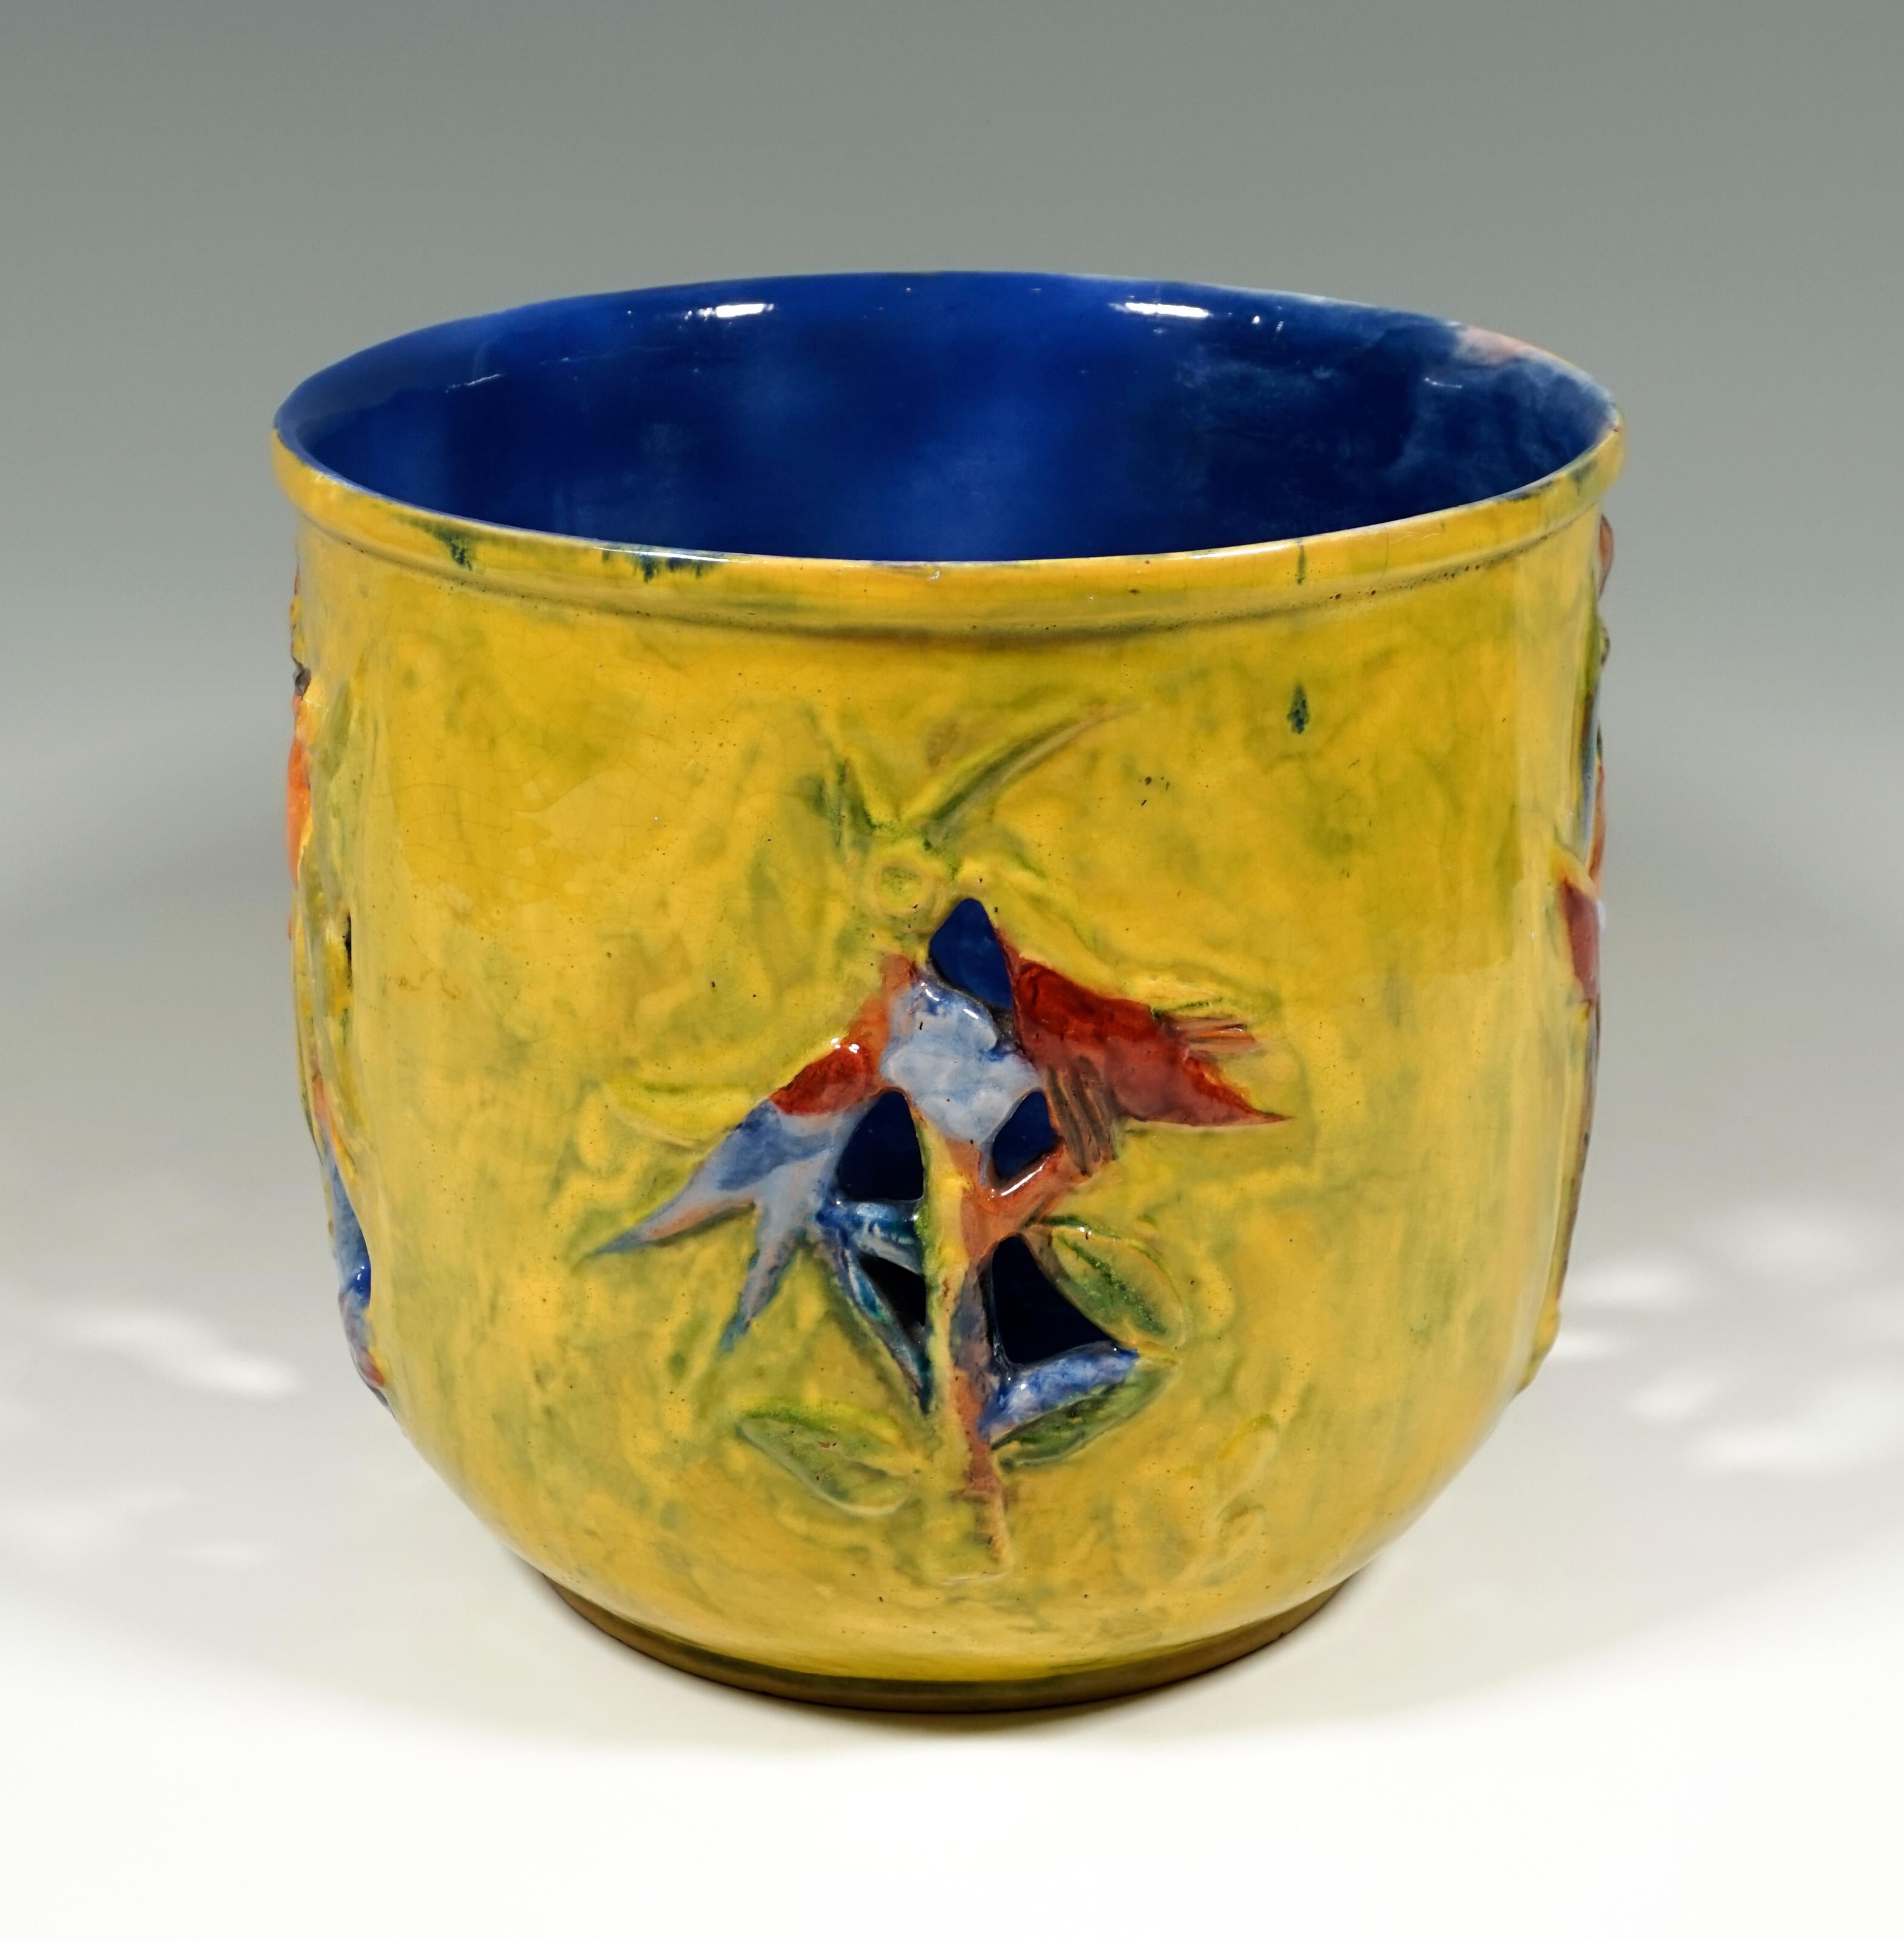 Expressionist Wiener Werkstaette Expressive Ceramic Flower Pot by Susi Singer, 1922-1925